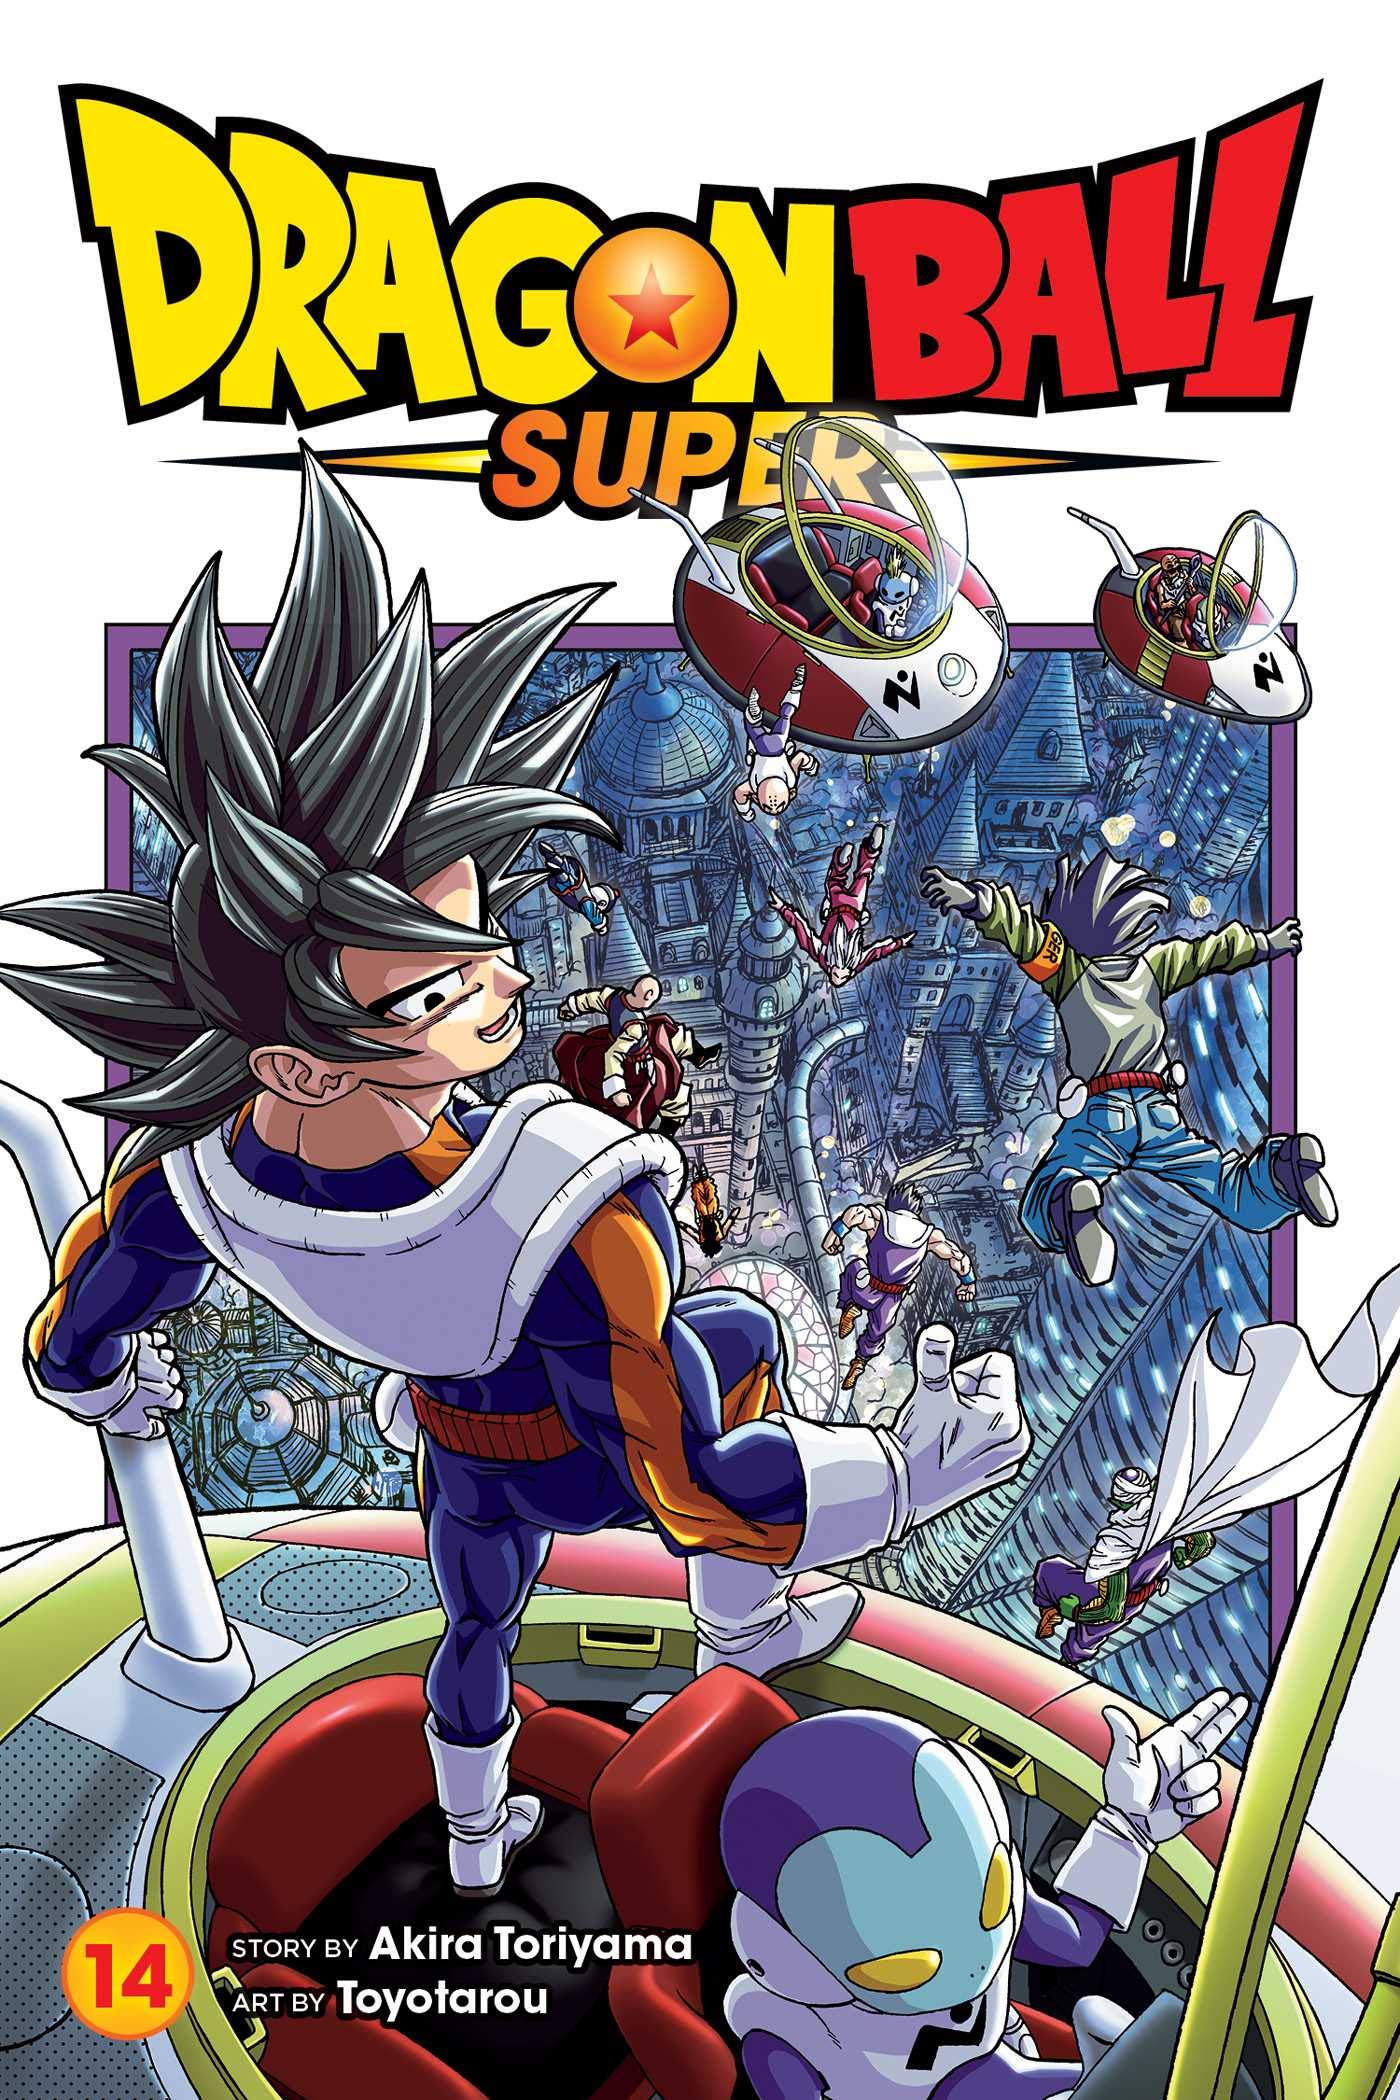 Super Manga